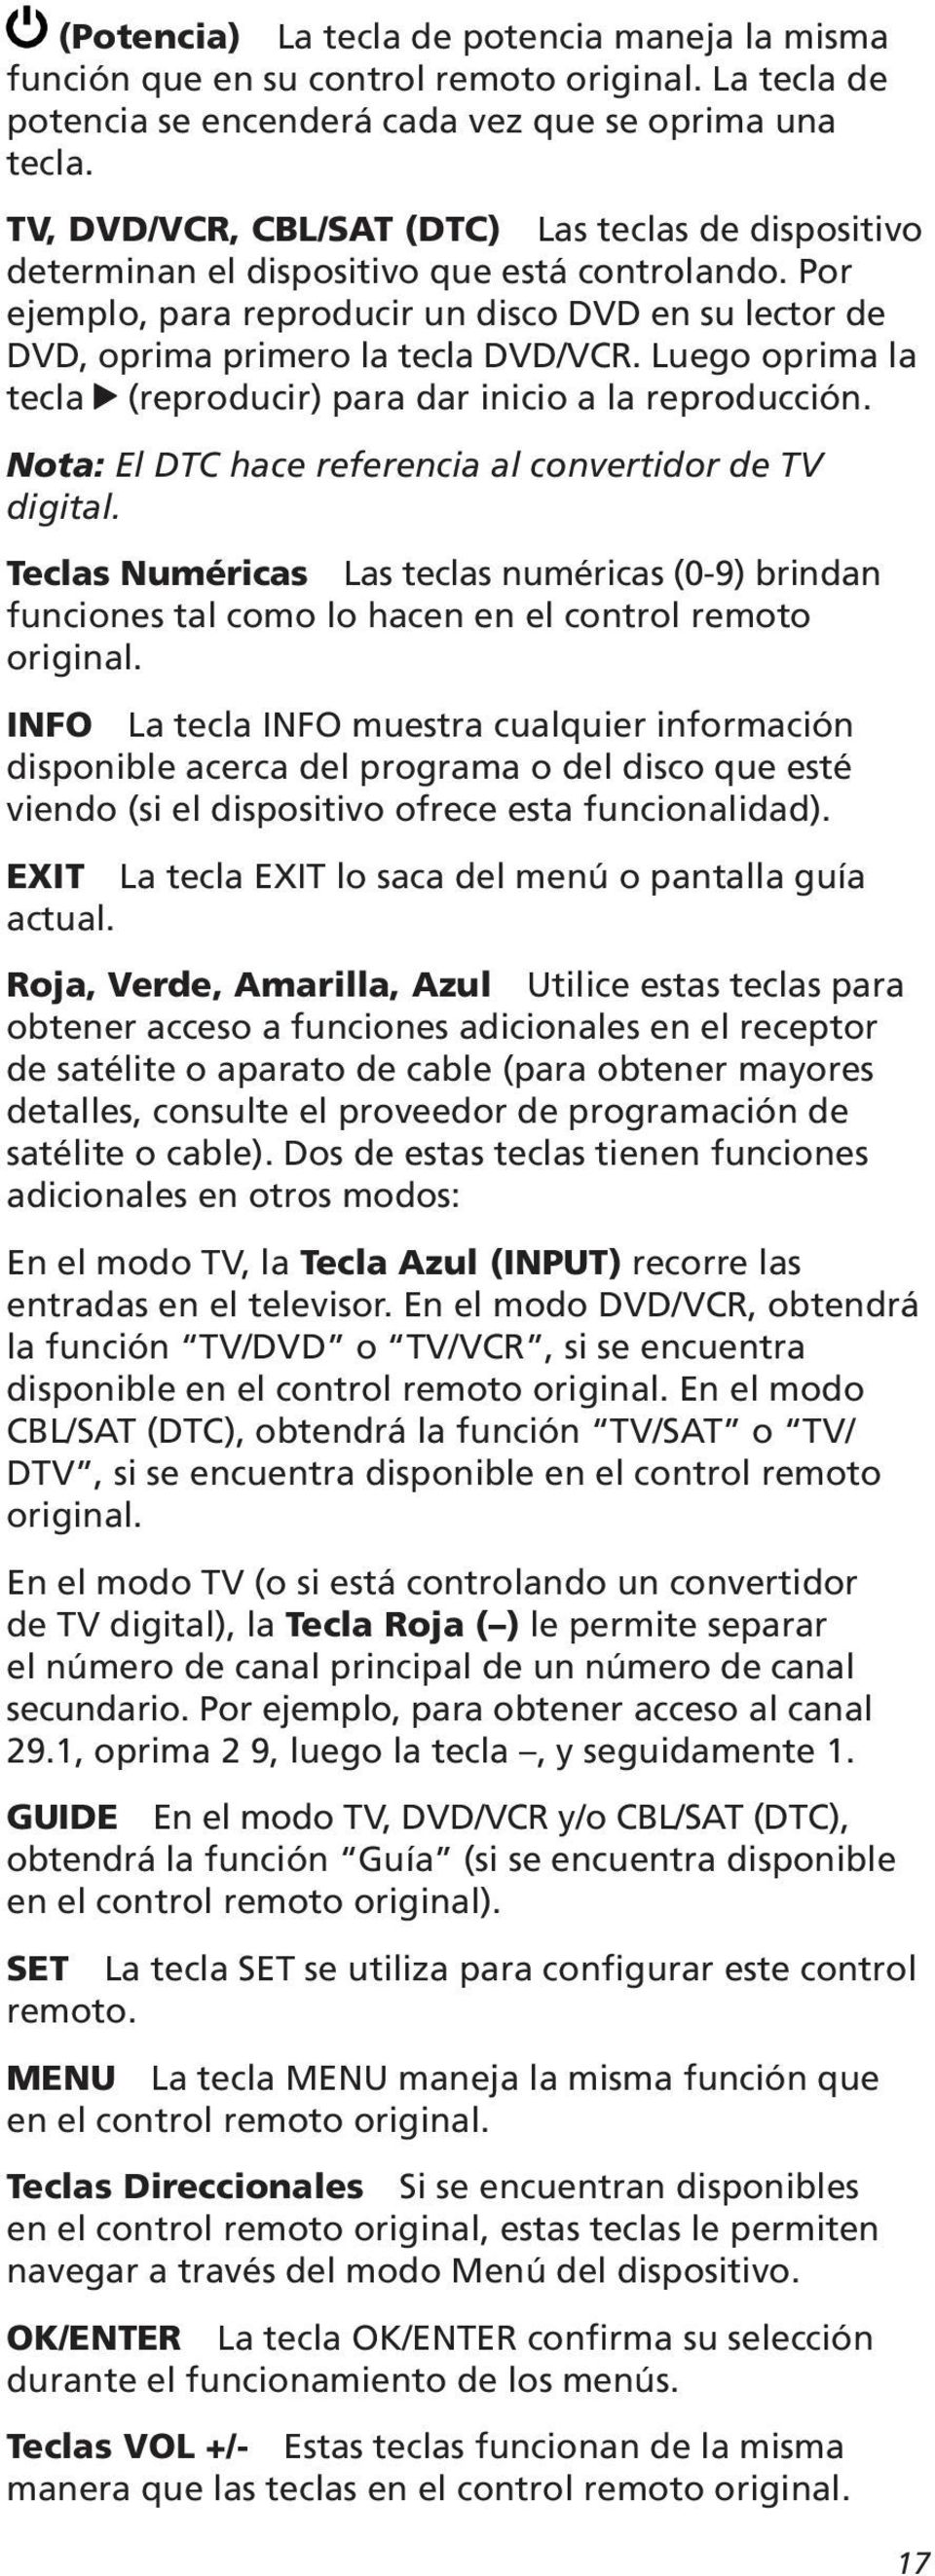 Nota: El DTC hace referencia al convertidor de TV digital. Teclas Numéricas funciones tal como lo hacen en el control remoto original.